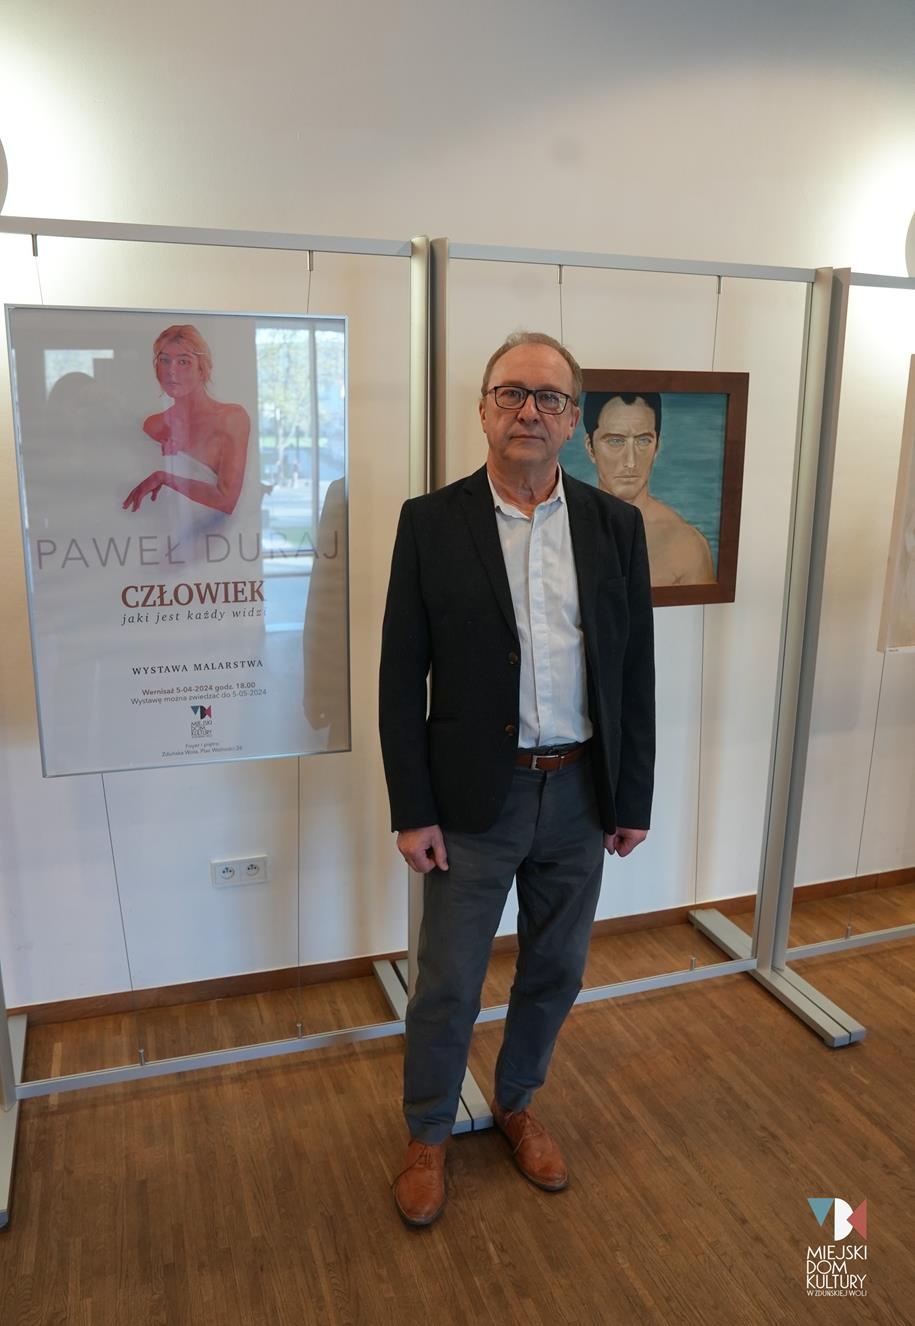 fotografia przedstawia mężczyznę, artystę malarza na tle nowej wystawy w MDK Ratusz.